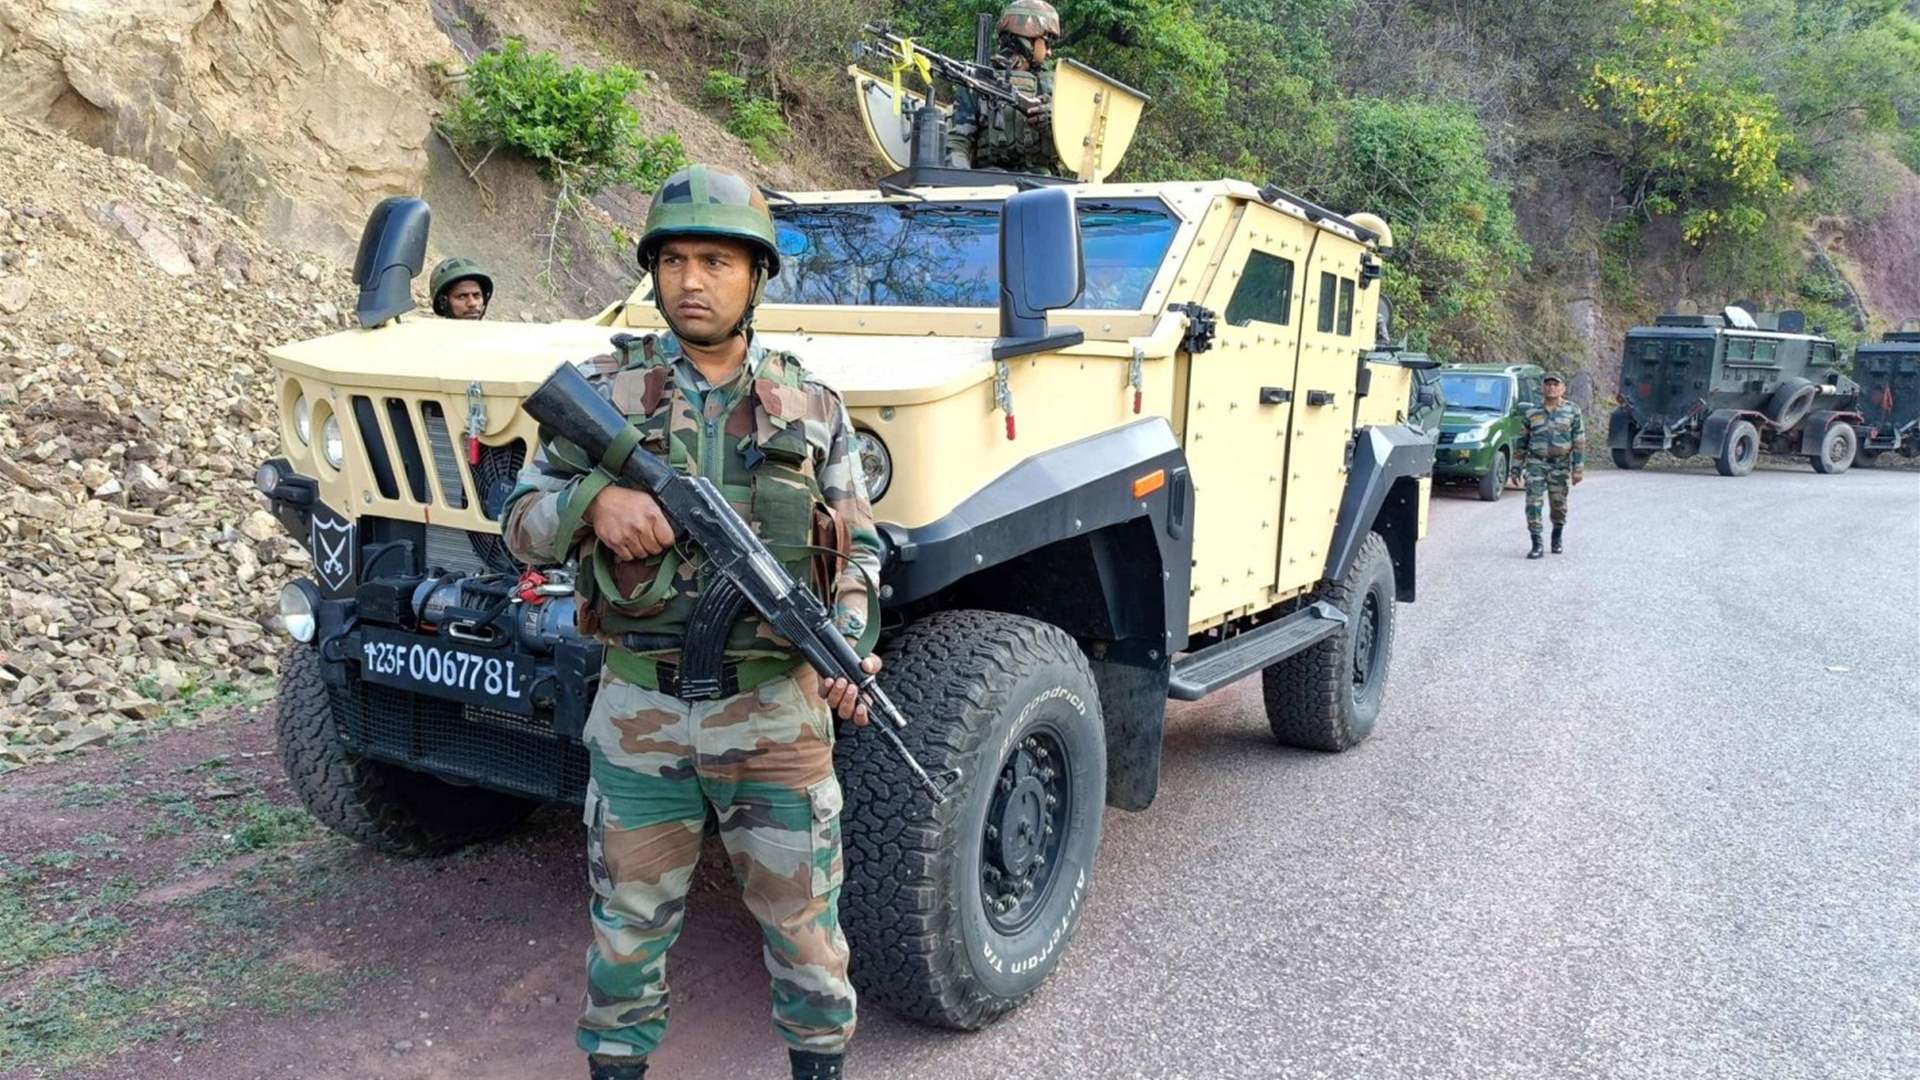 مقتل مسلح وإصابة سبعة من عناصر الأمن في اشتباكات في كشمير